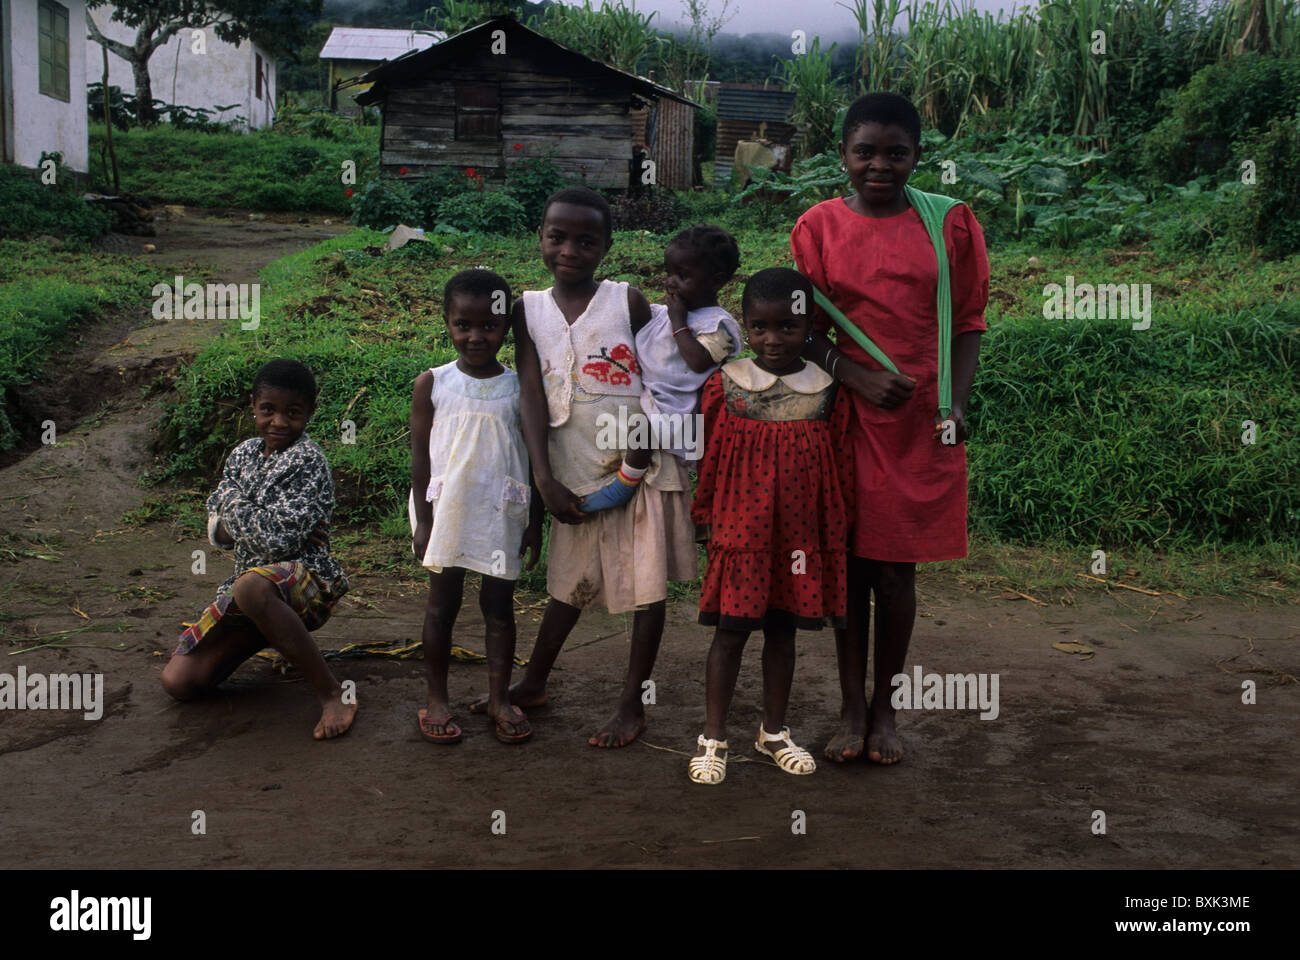 Bubi girls. MOCA South Bioko Island  EQUATORIAL GUINEA Stock Photo